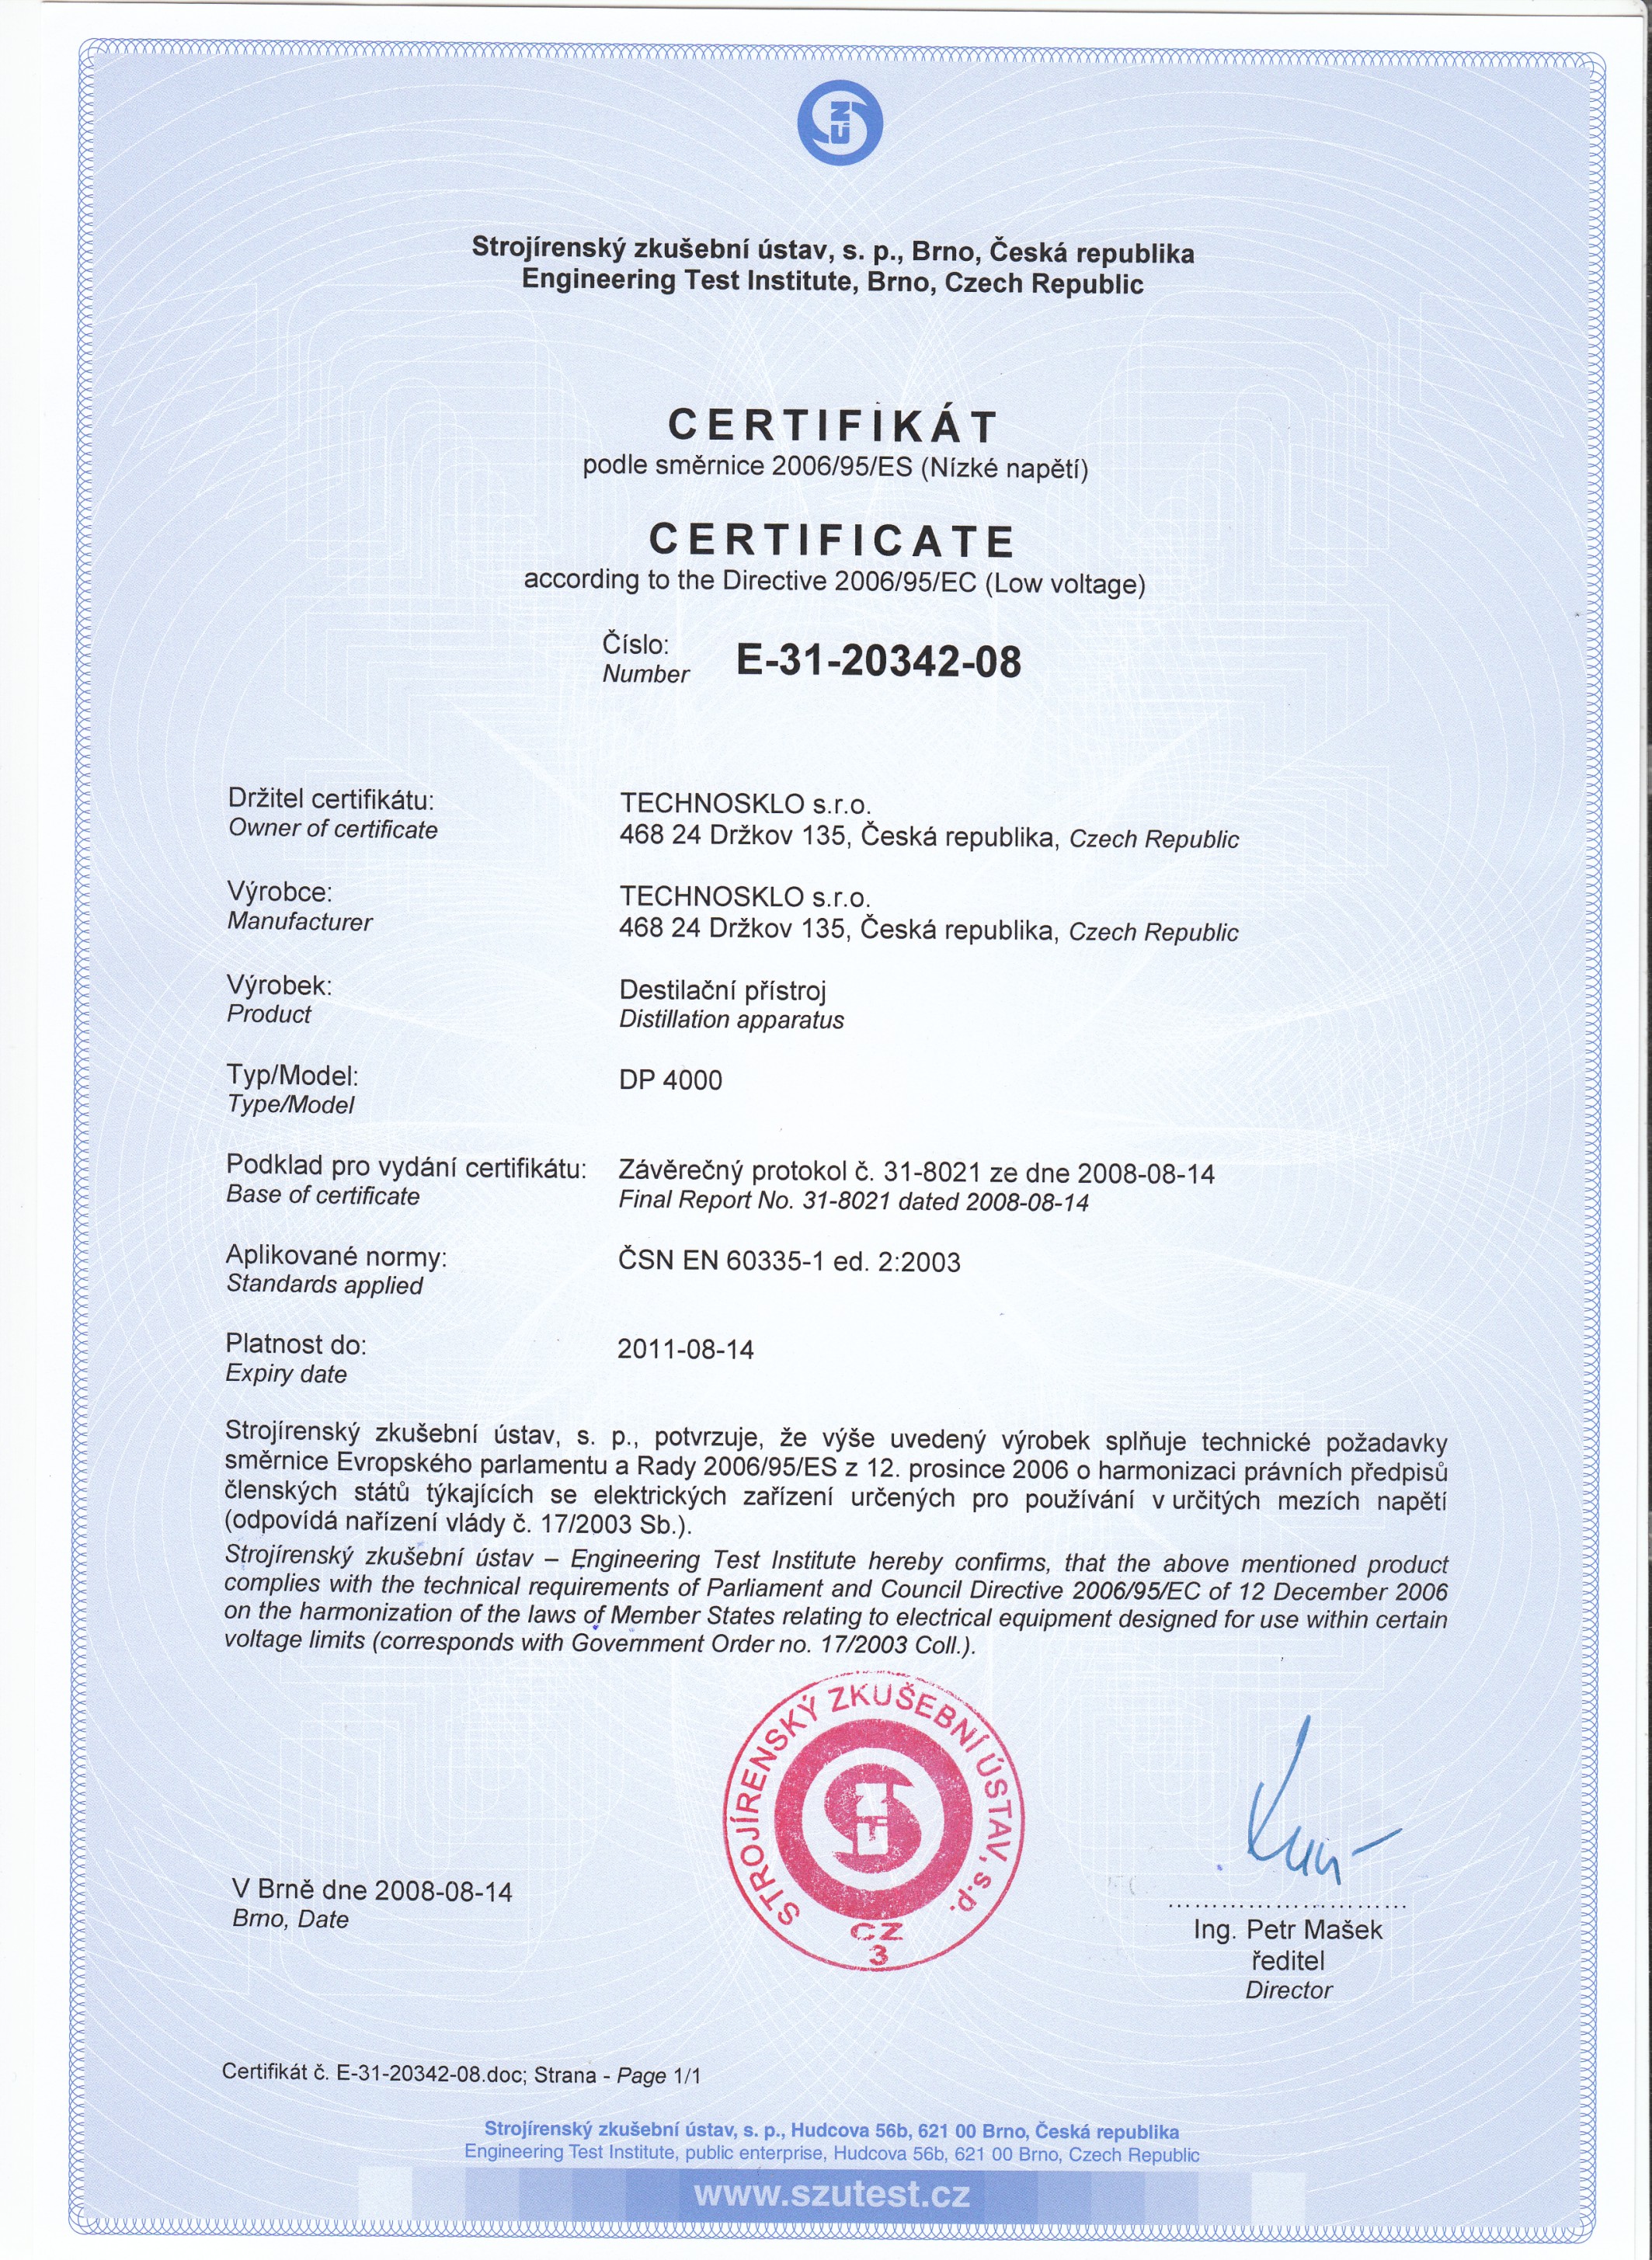 Certificat according the Directive 2006/95/EC